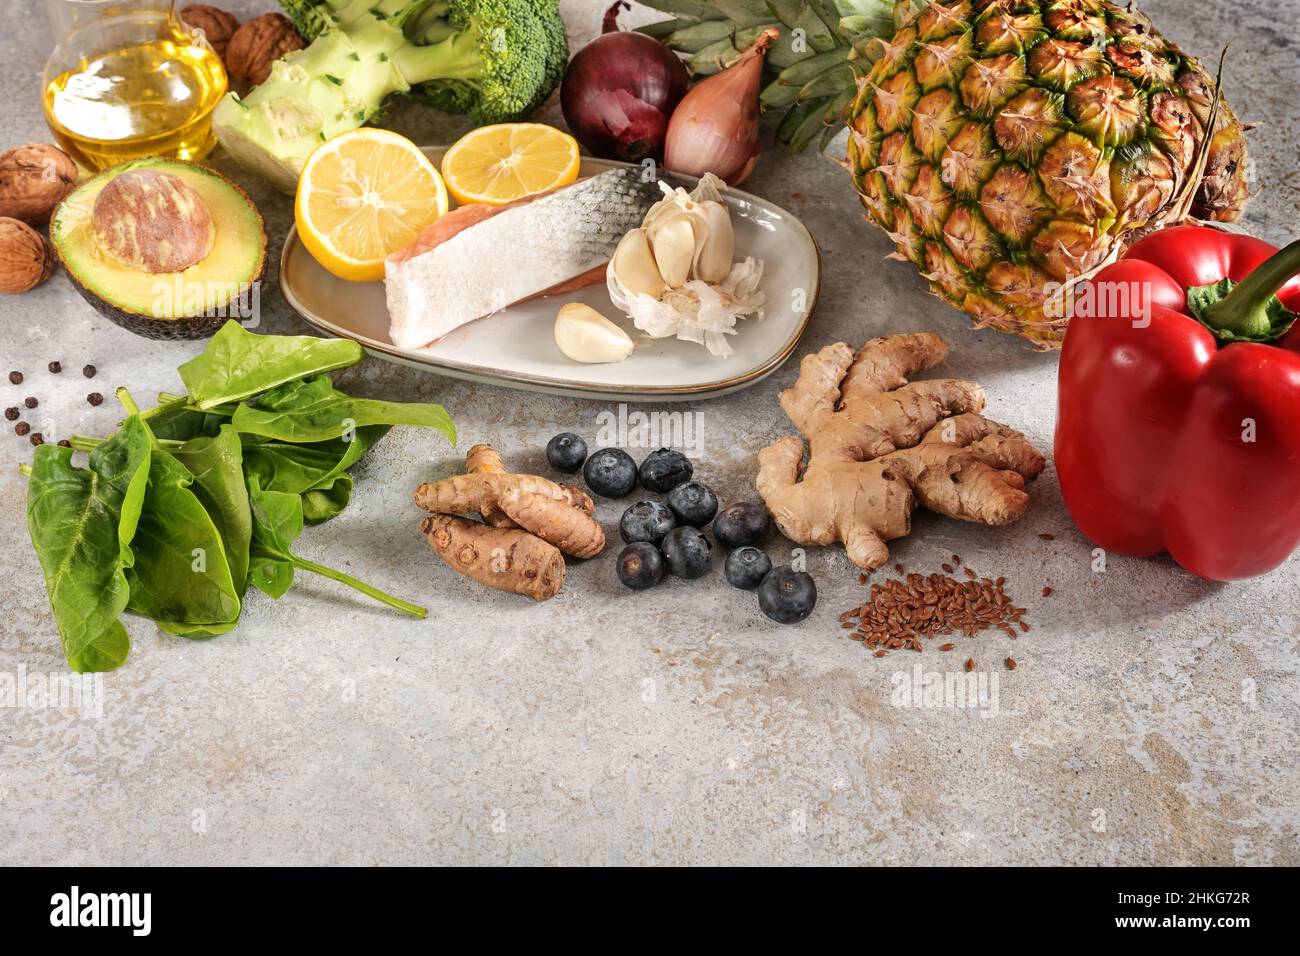 Set aus frischem Gemüse, Fisch, Früchten, Nüssen und Gewürzen für eine entzündungshemmende und antioxidative Ernährung, gesundes Lebensmittelkonzept, hellgrauer Steinrückstand Stockfoto